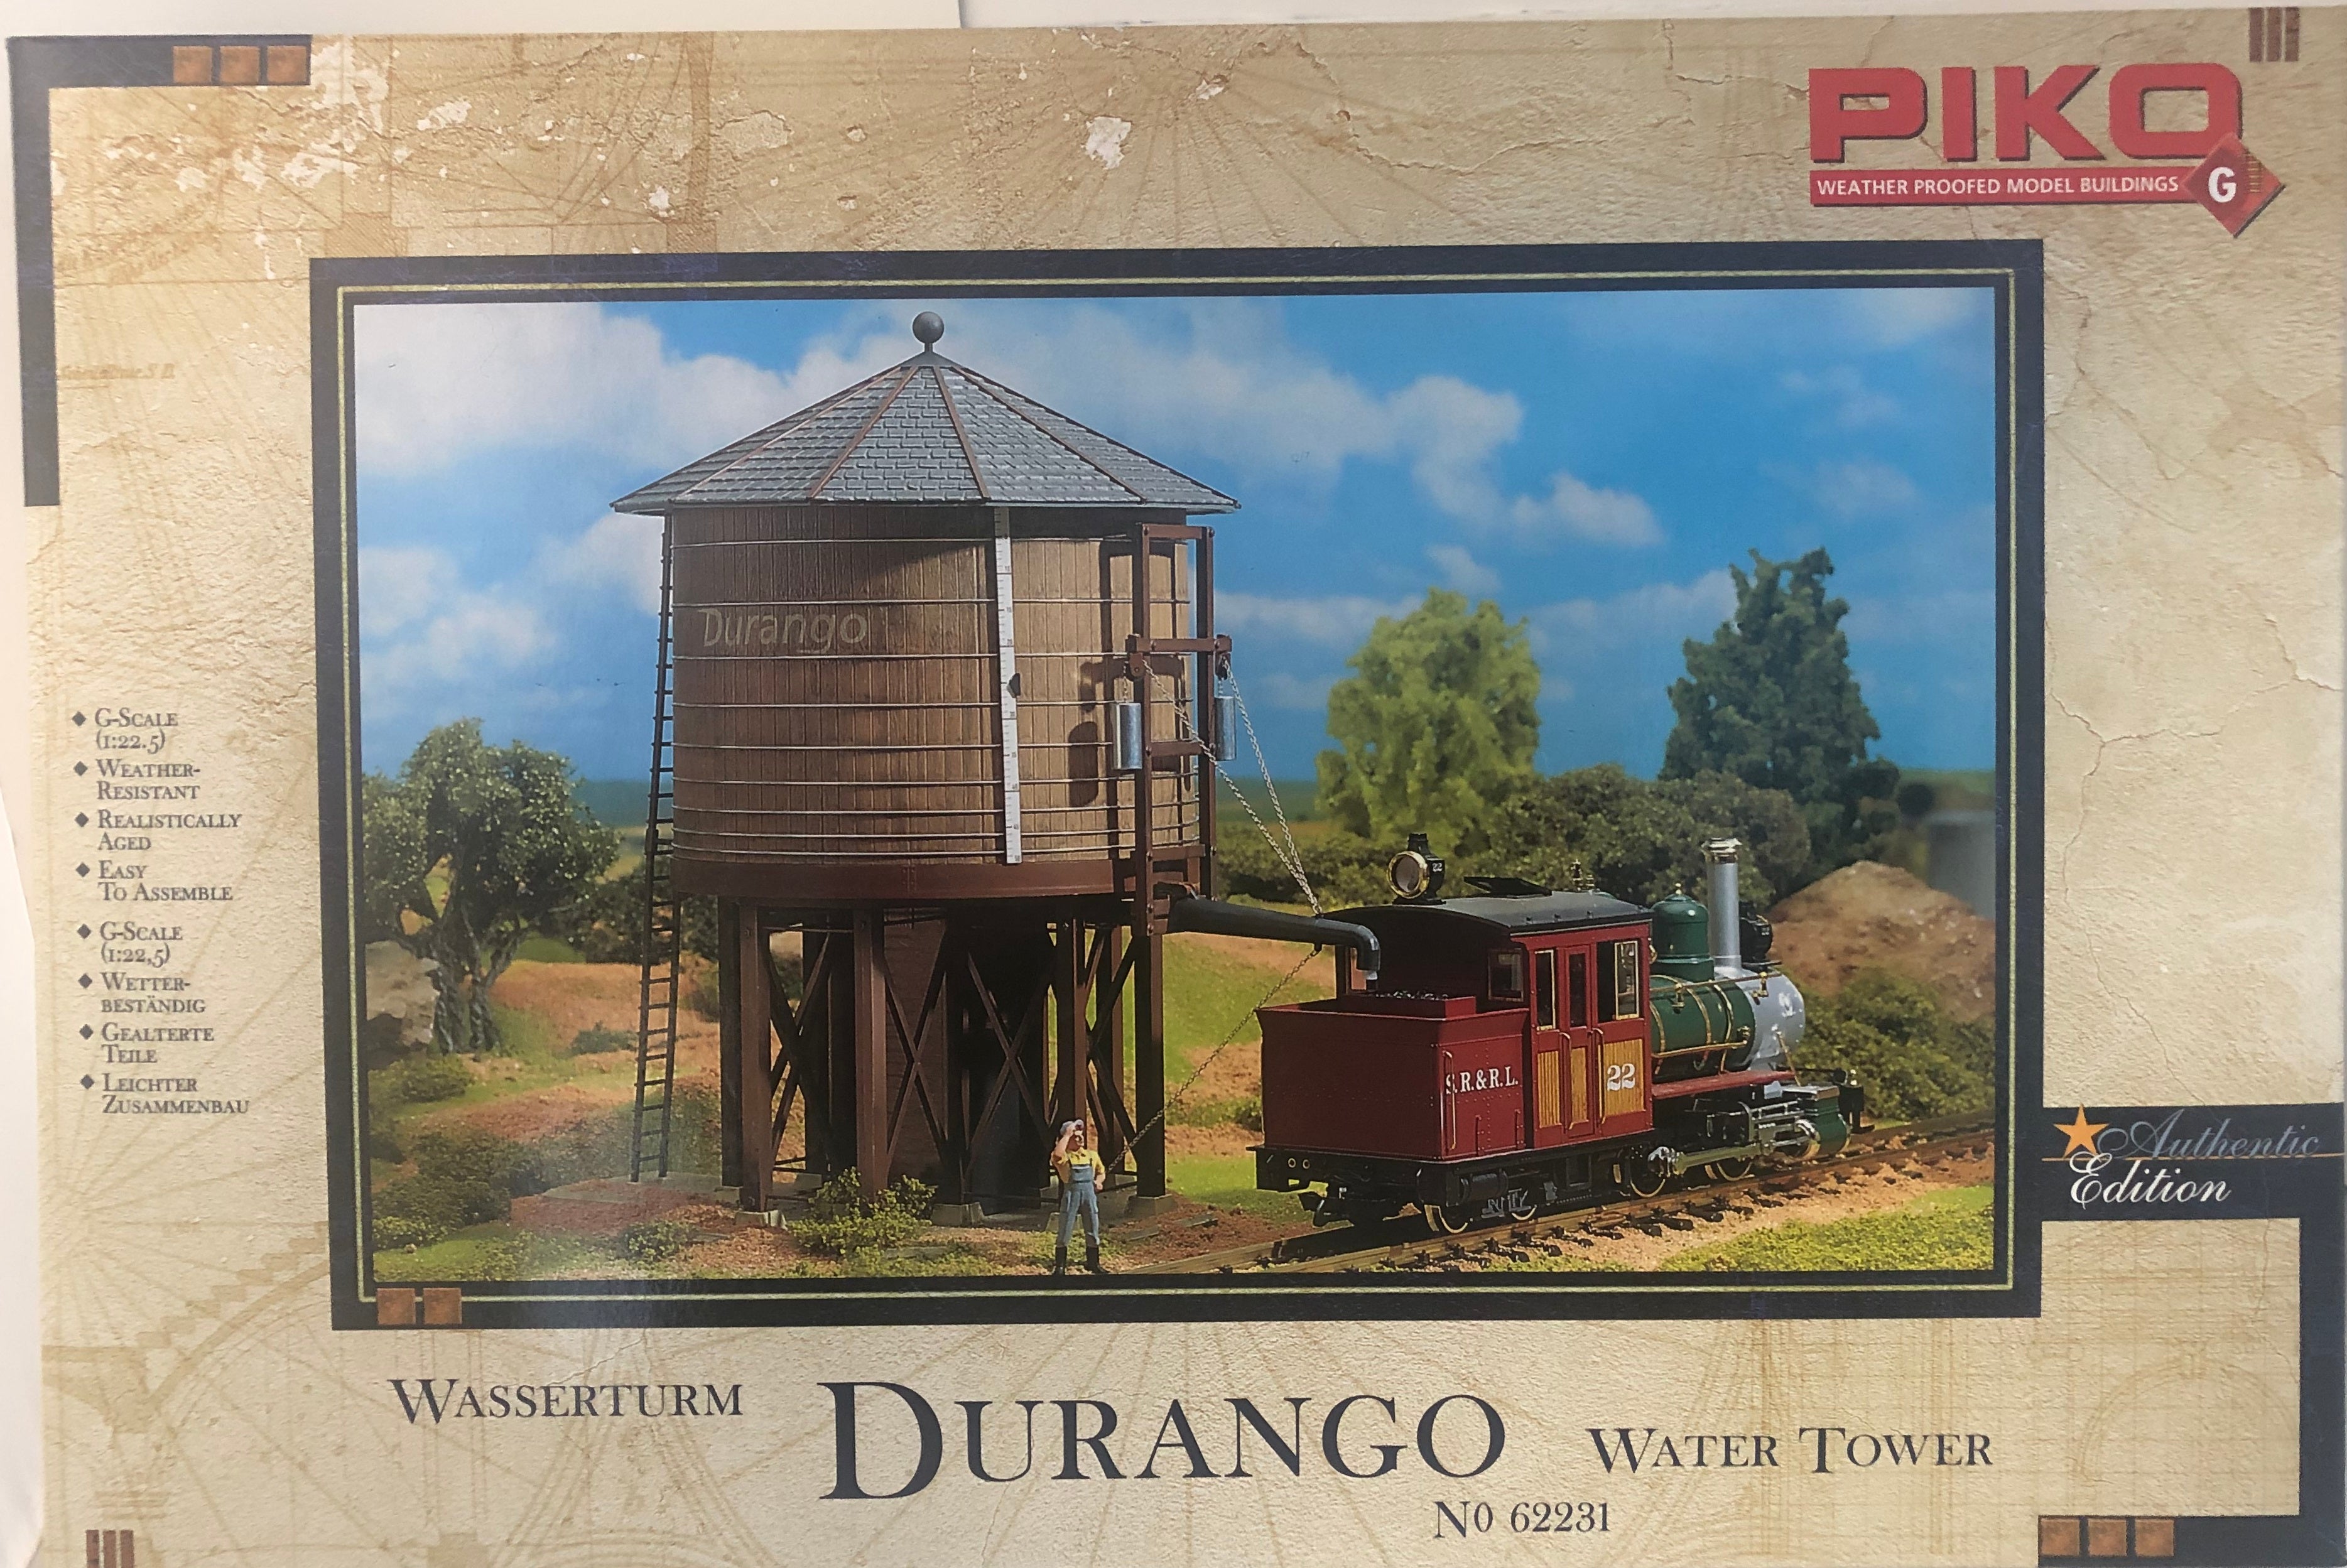 Durango Water Tower